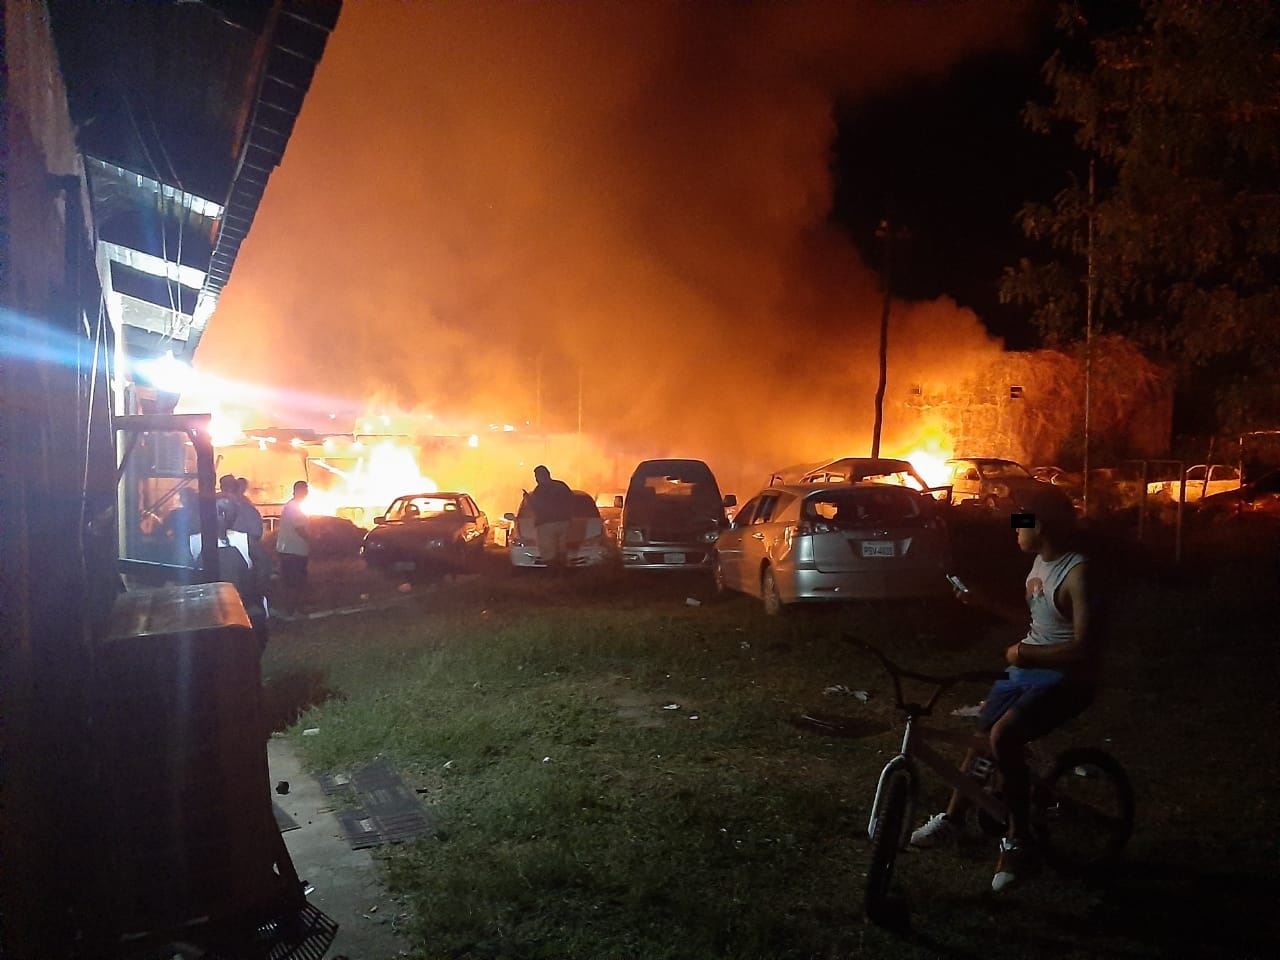 La Defensoría del Pueblo lamenta el fallecimiento de tres personas, que derivó en la quema de las instalaciones policiales de Puerto Suárez